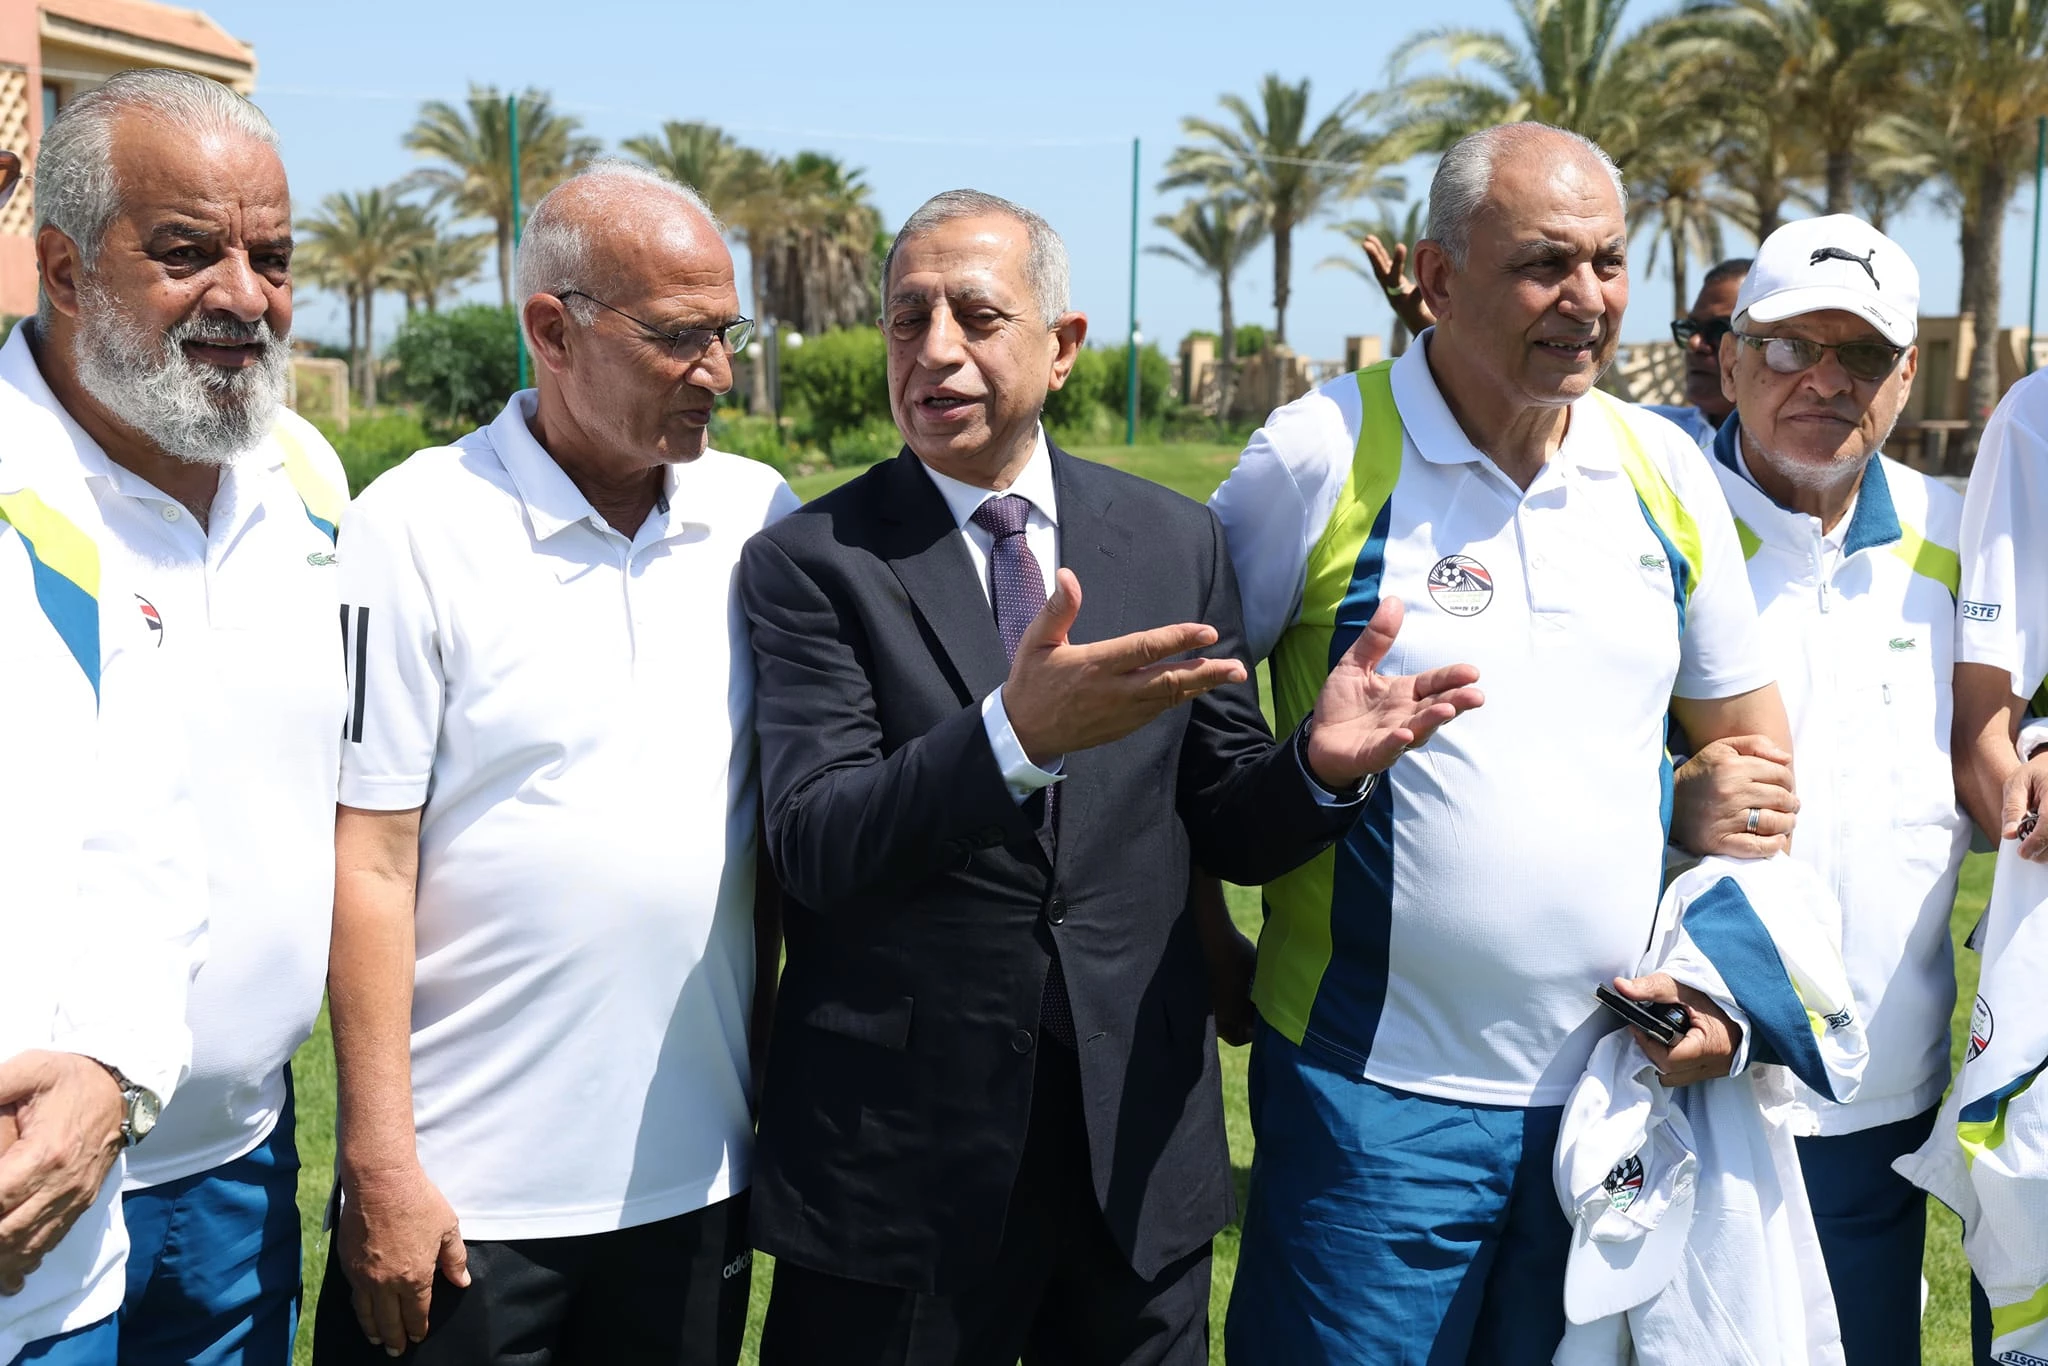 افتتاح ملعب الأكاديمية بفرعها في بورسعيد بحضور نجوم الجيل الذهبي لكرة القدم المصرية